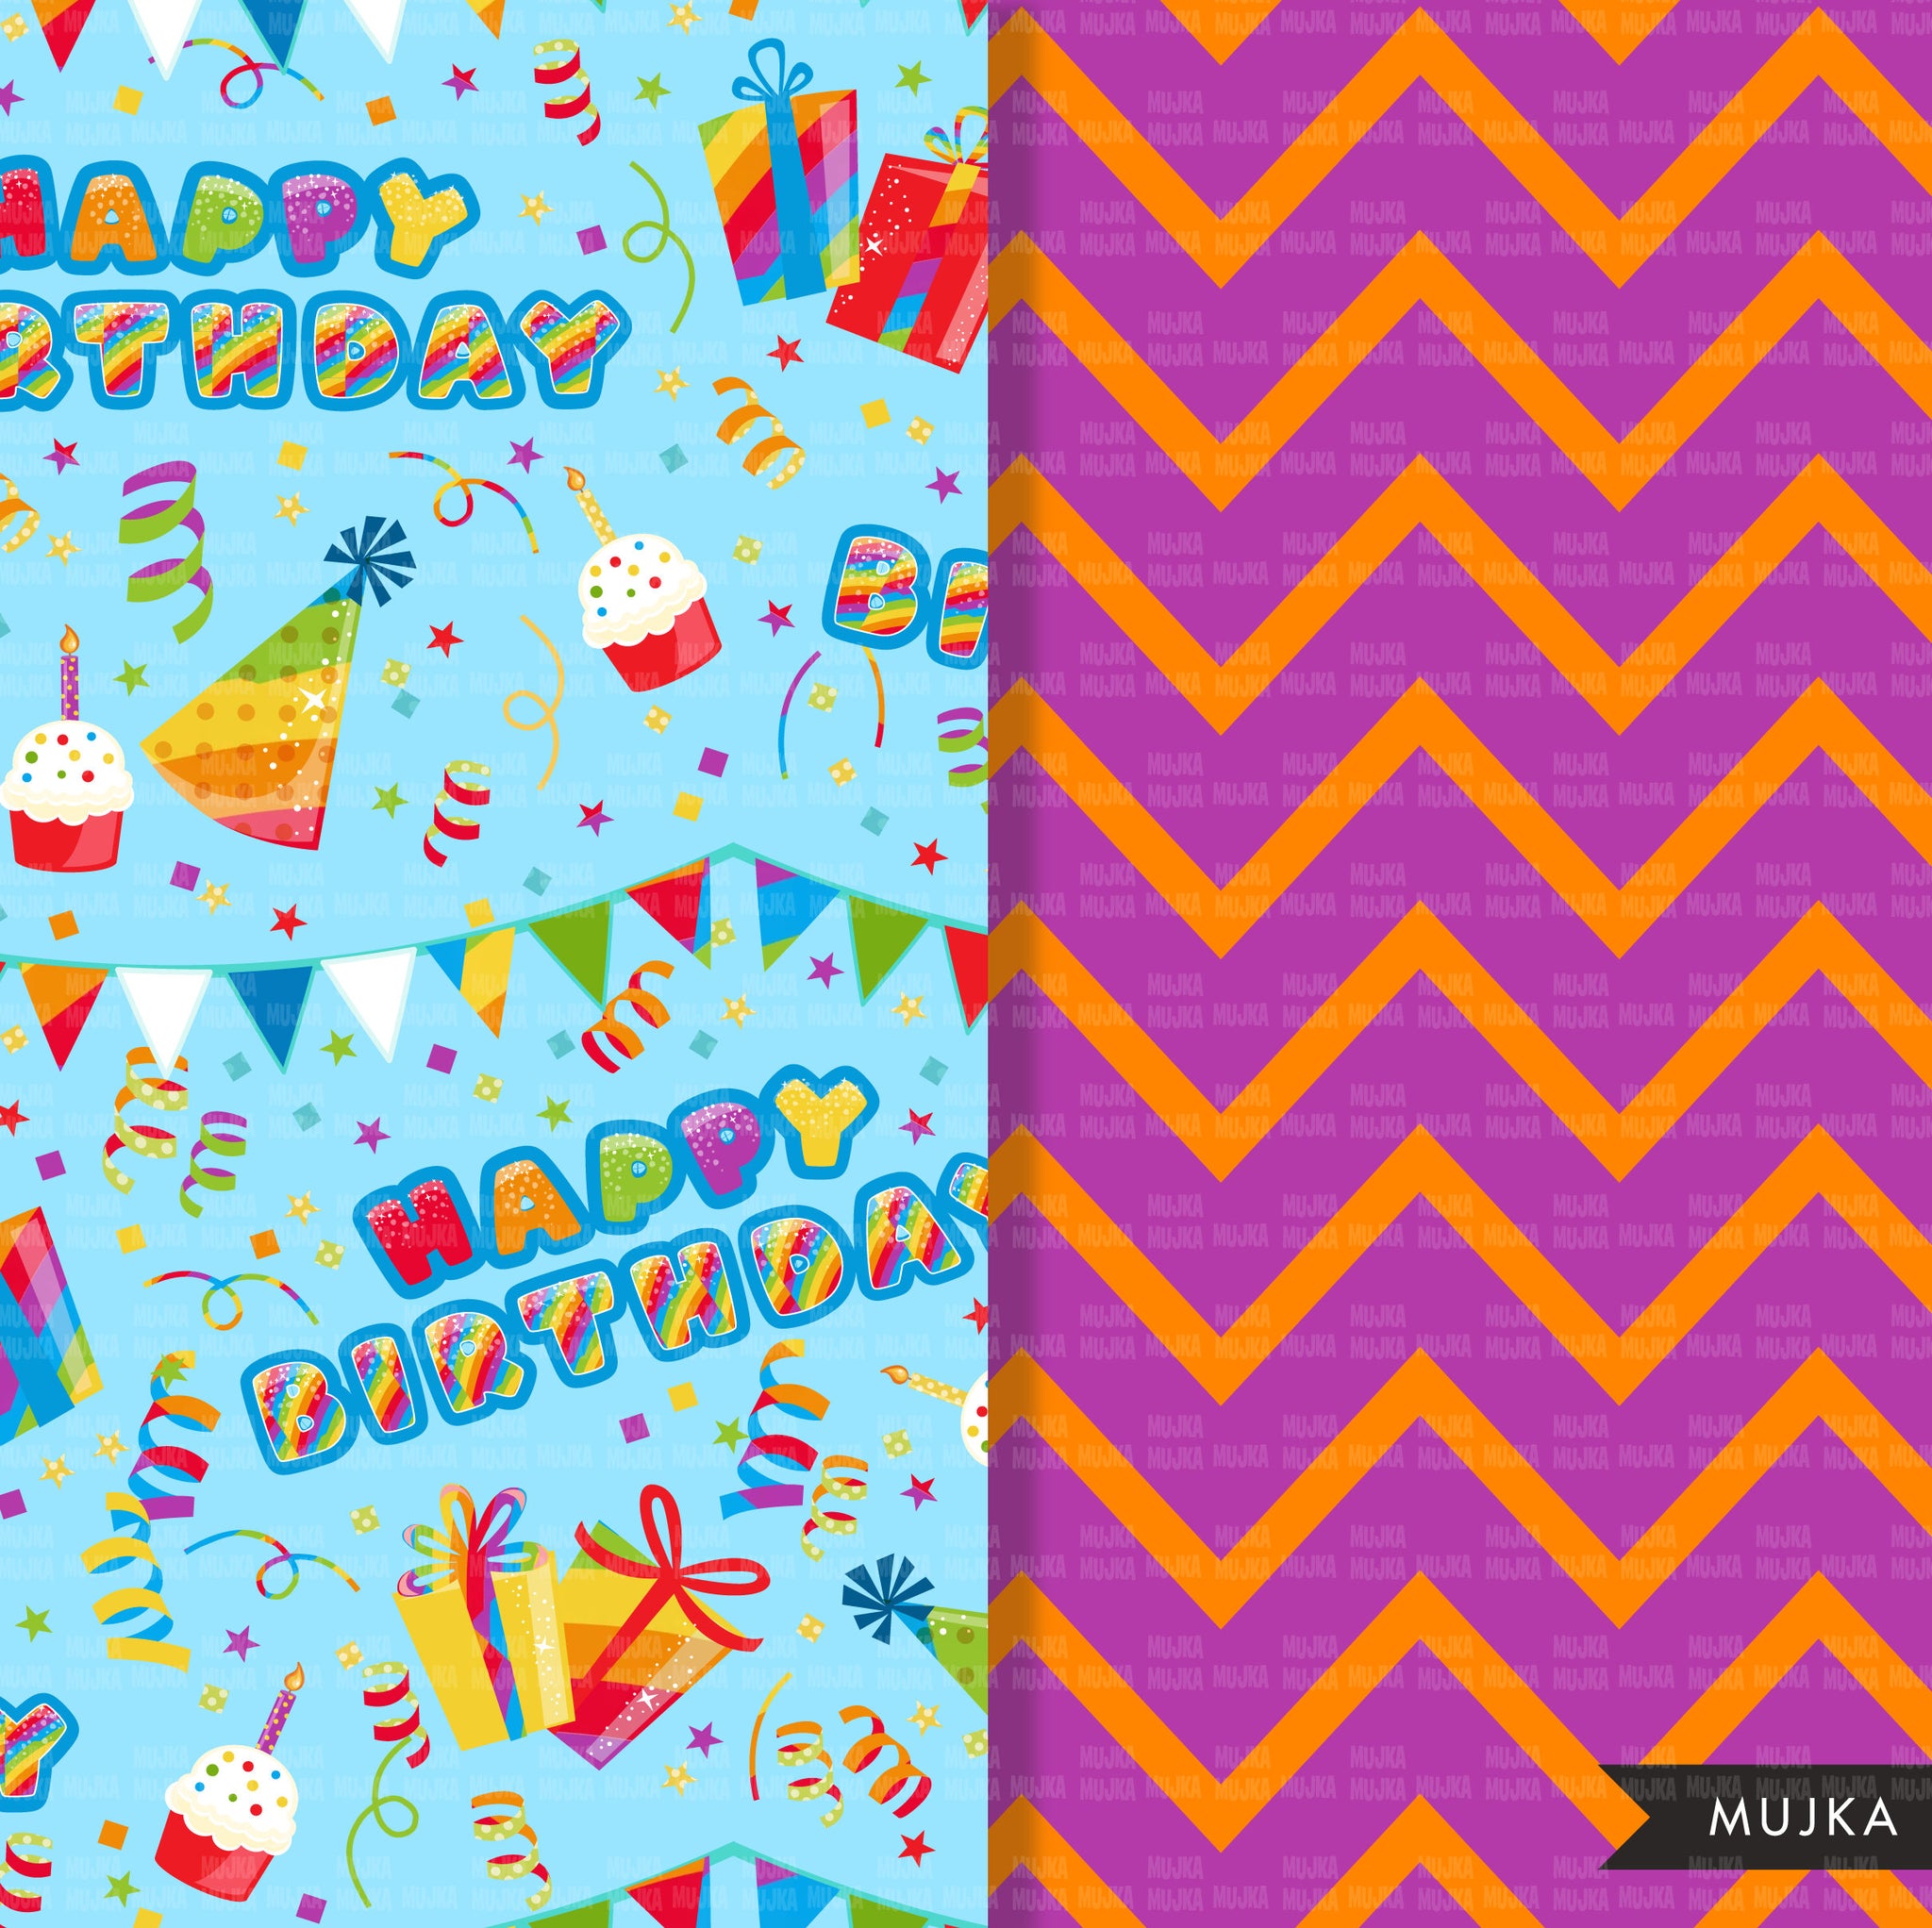 Birthday Pattern Paper Free Downloads - tortagialla